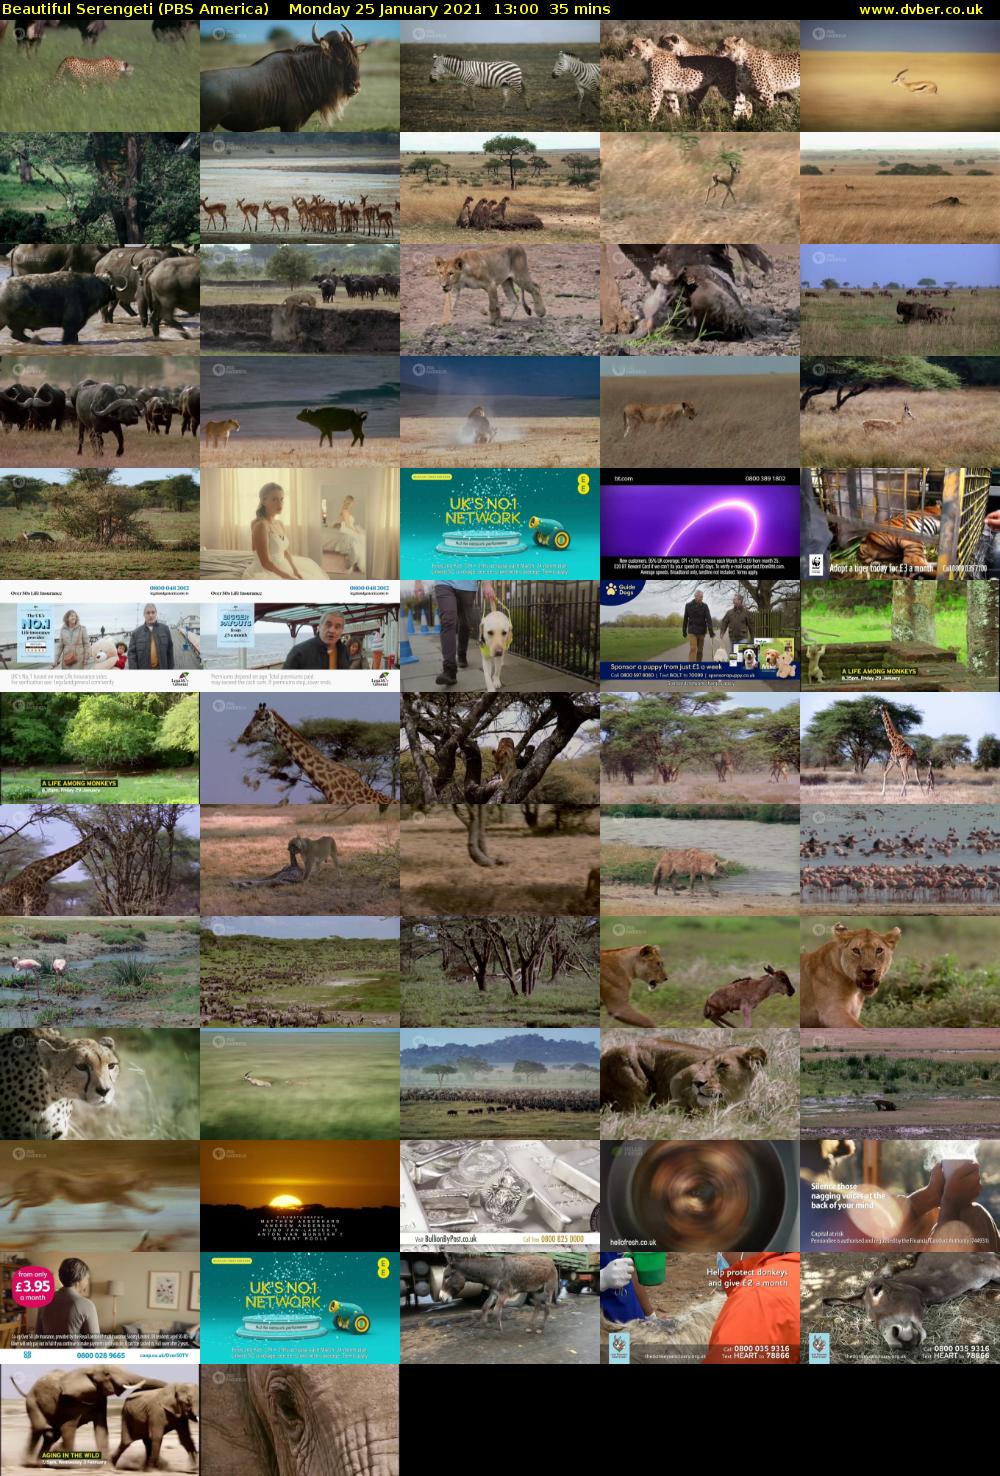 Beautiful Serengeti (PBS America) Monday 25 January 2021 13:00 - 13:35